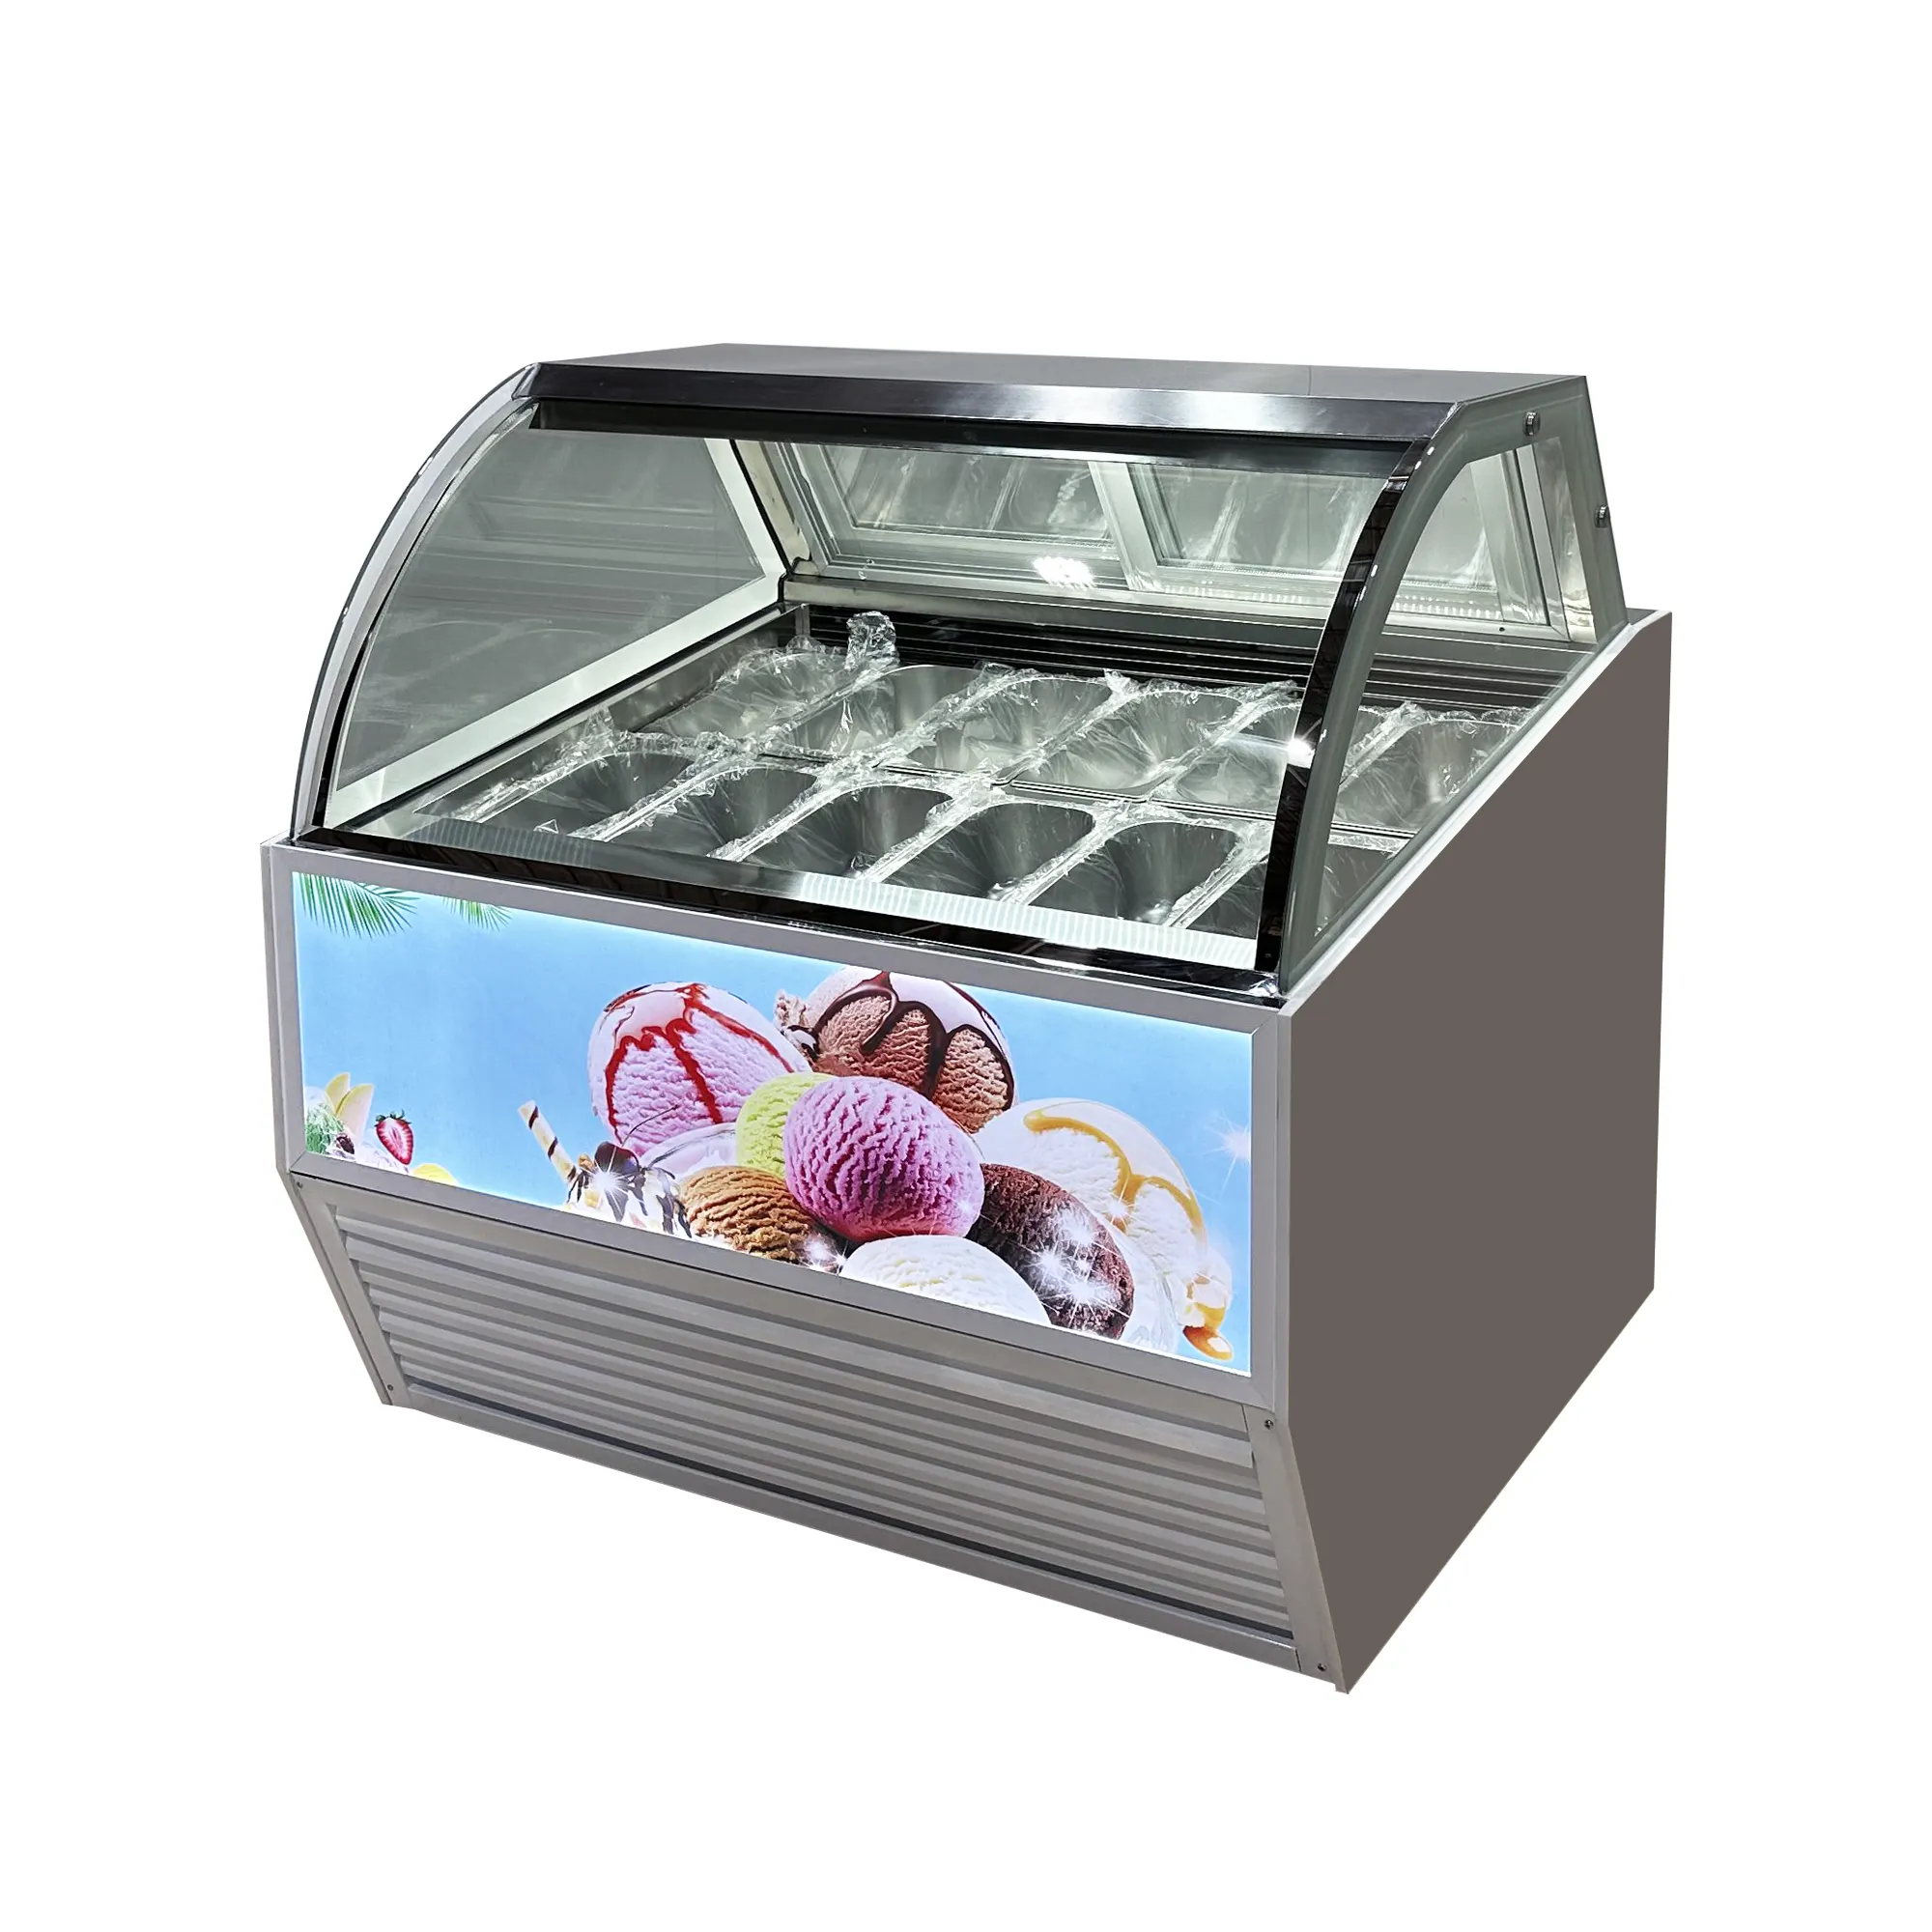 10 / 12 / 14 / 16 /18 / 20 sartenes helados italianos refrigerador y congelador